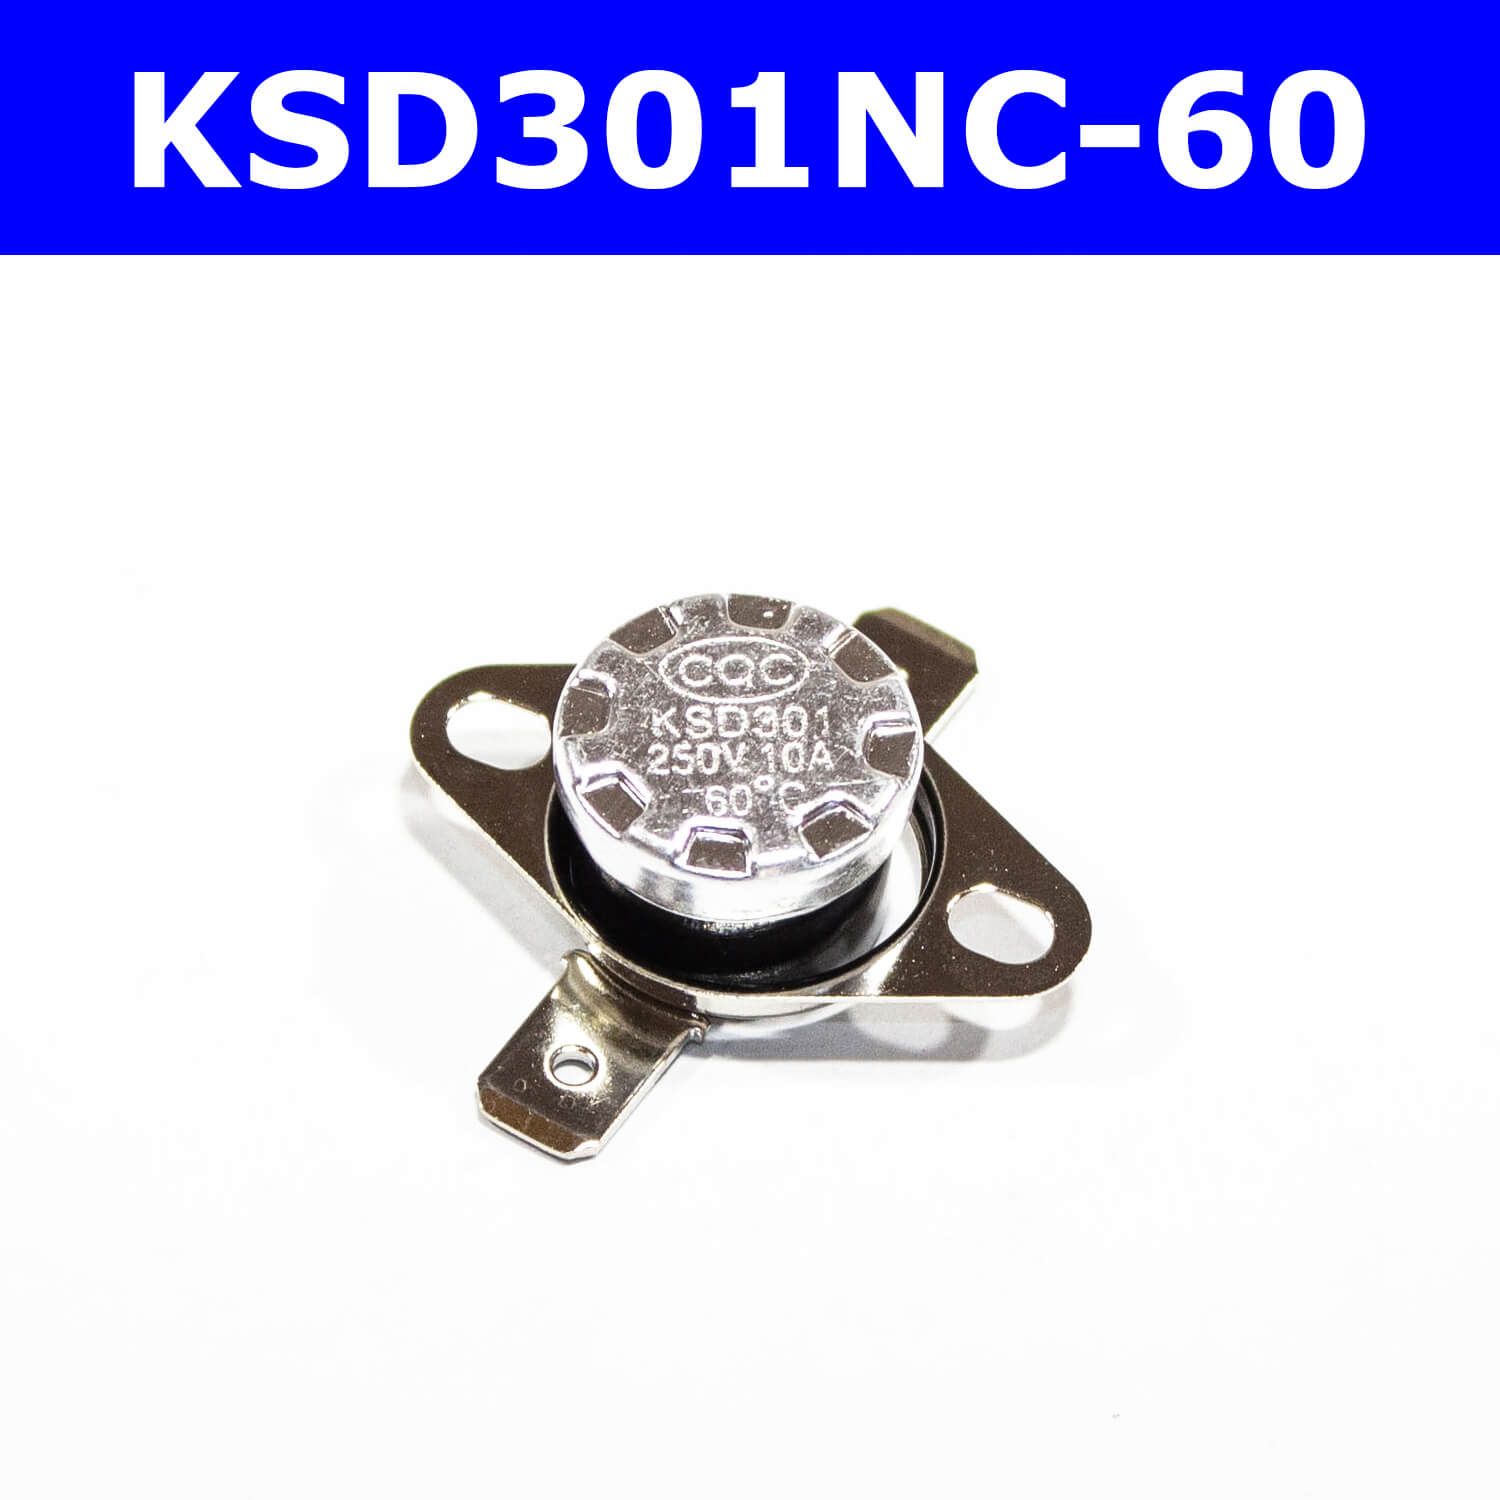 KSD301NC-60-термостатнормальнозамкнутыйсподвижнымфланцем(250В,10А,60С,KSD301)